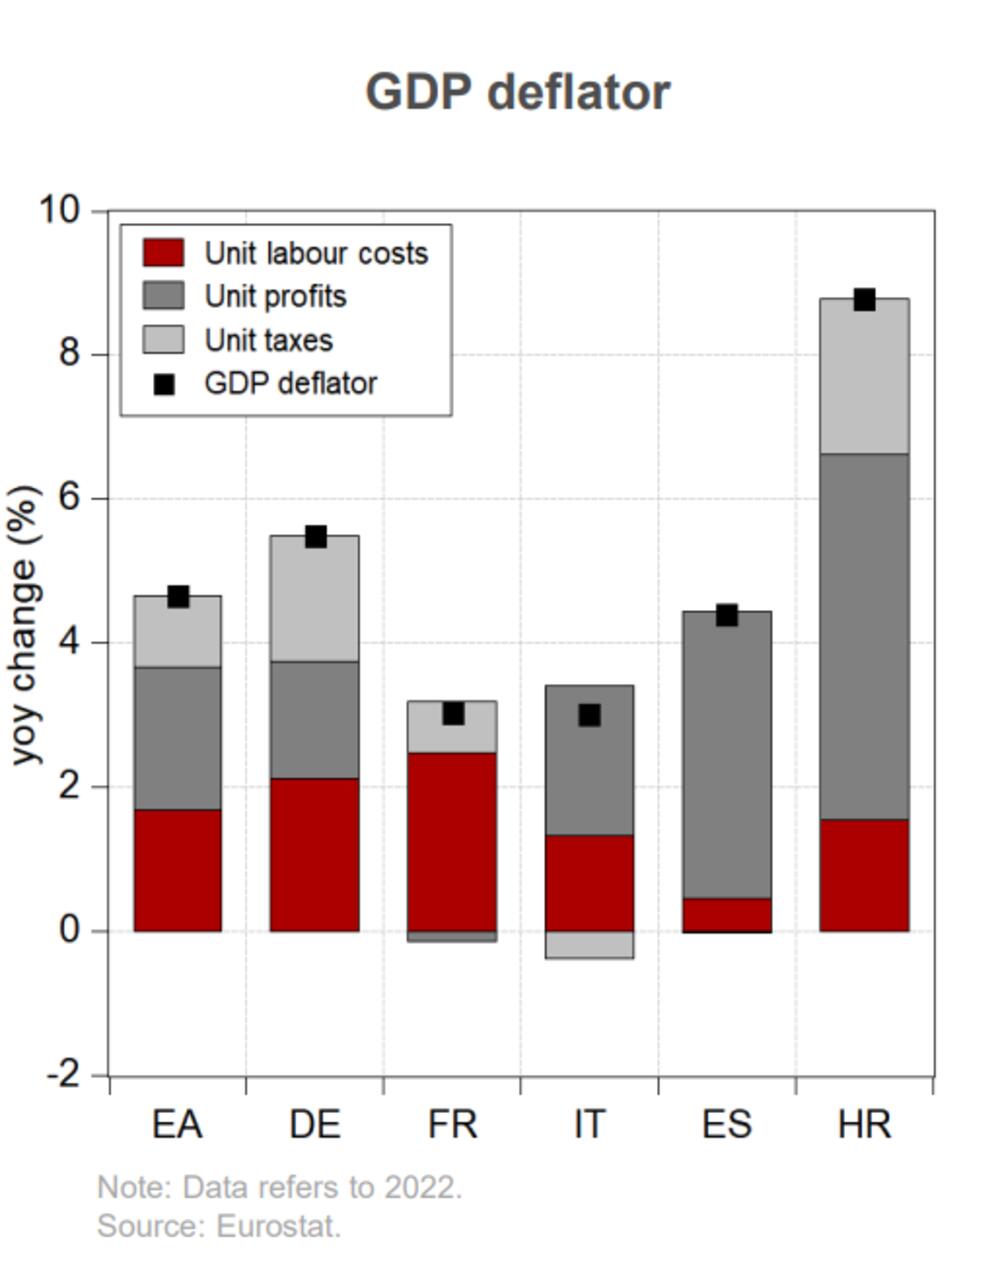 Crveno je uticaj troškova rada, tamnosivo uticaj profita, a svijetlosivo uticaj dažbina na inflaciju